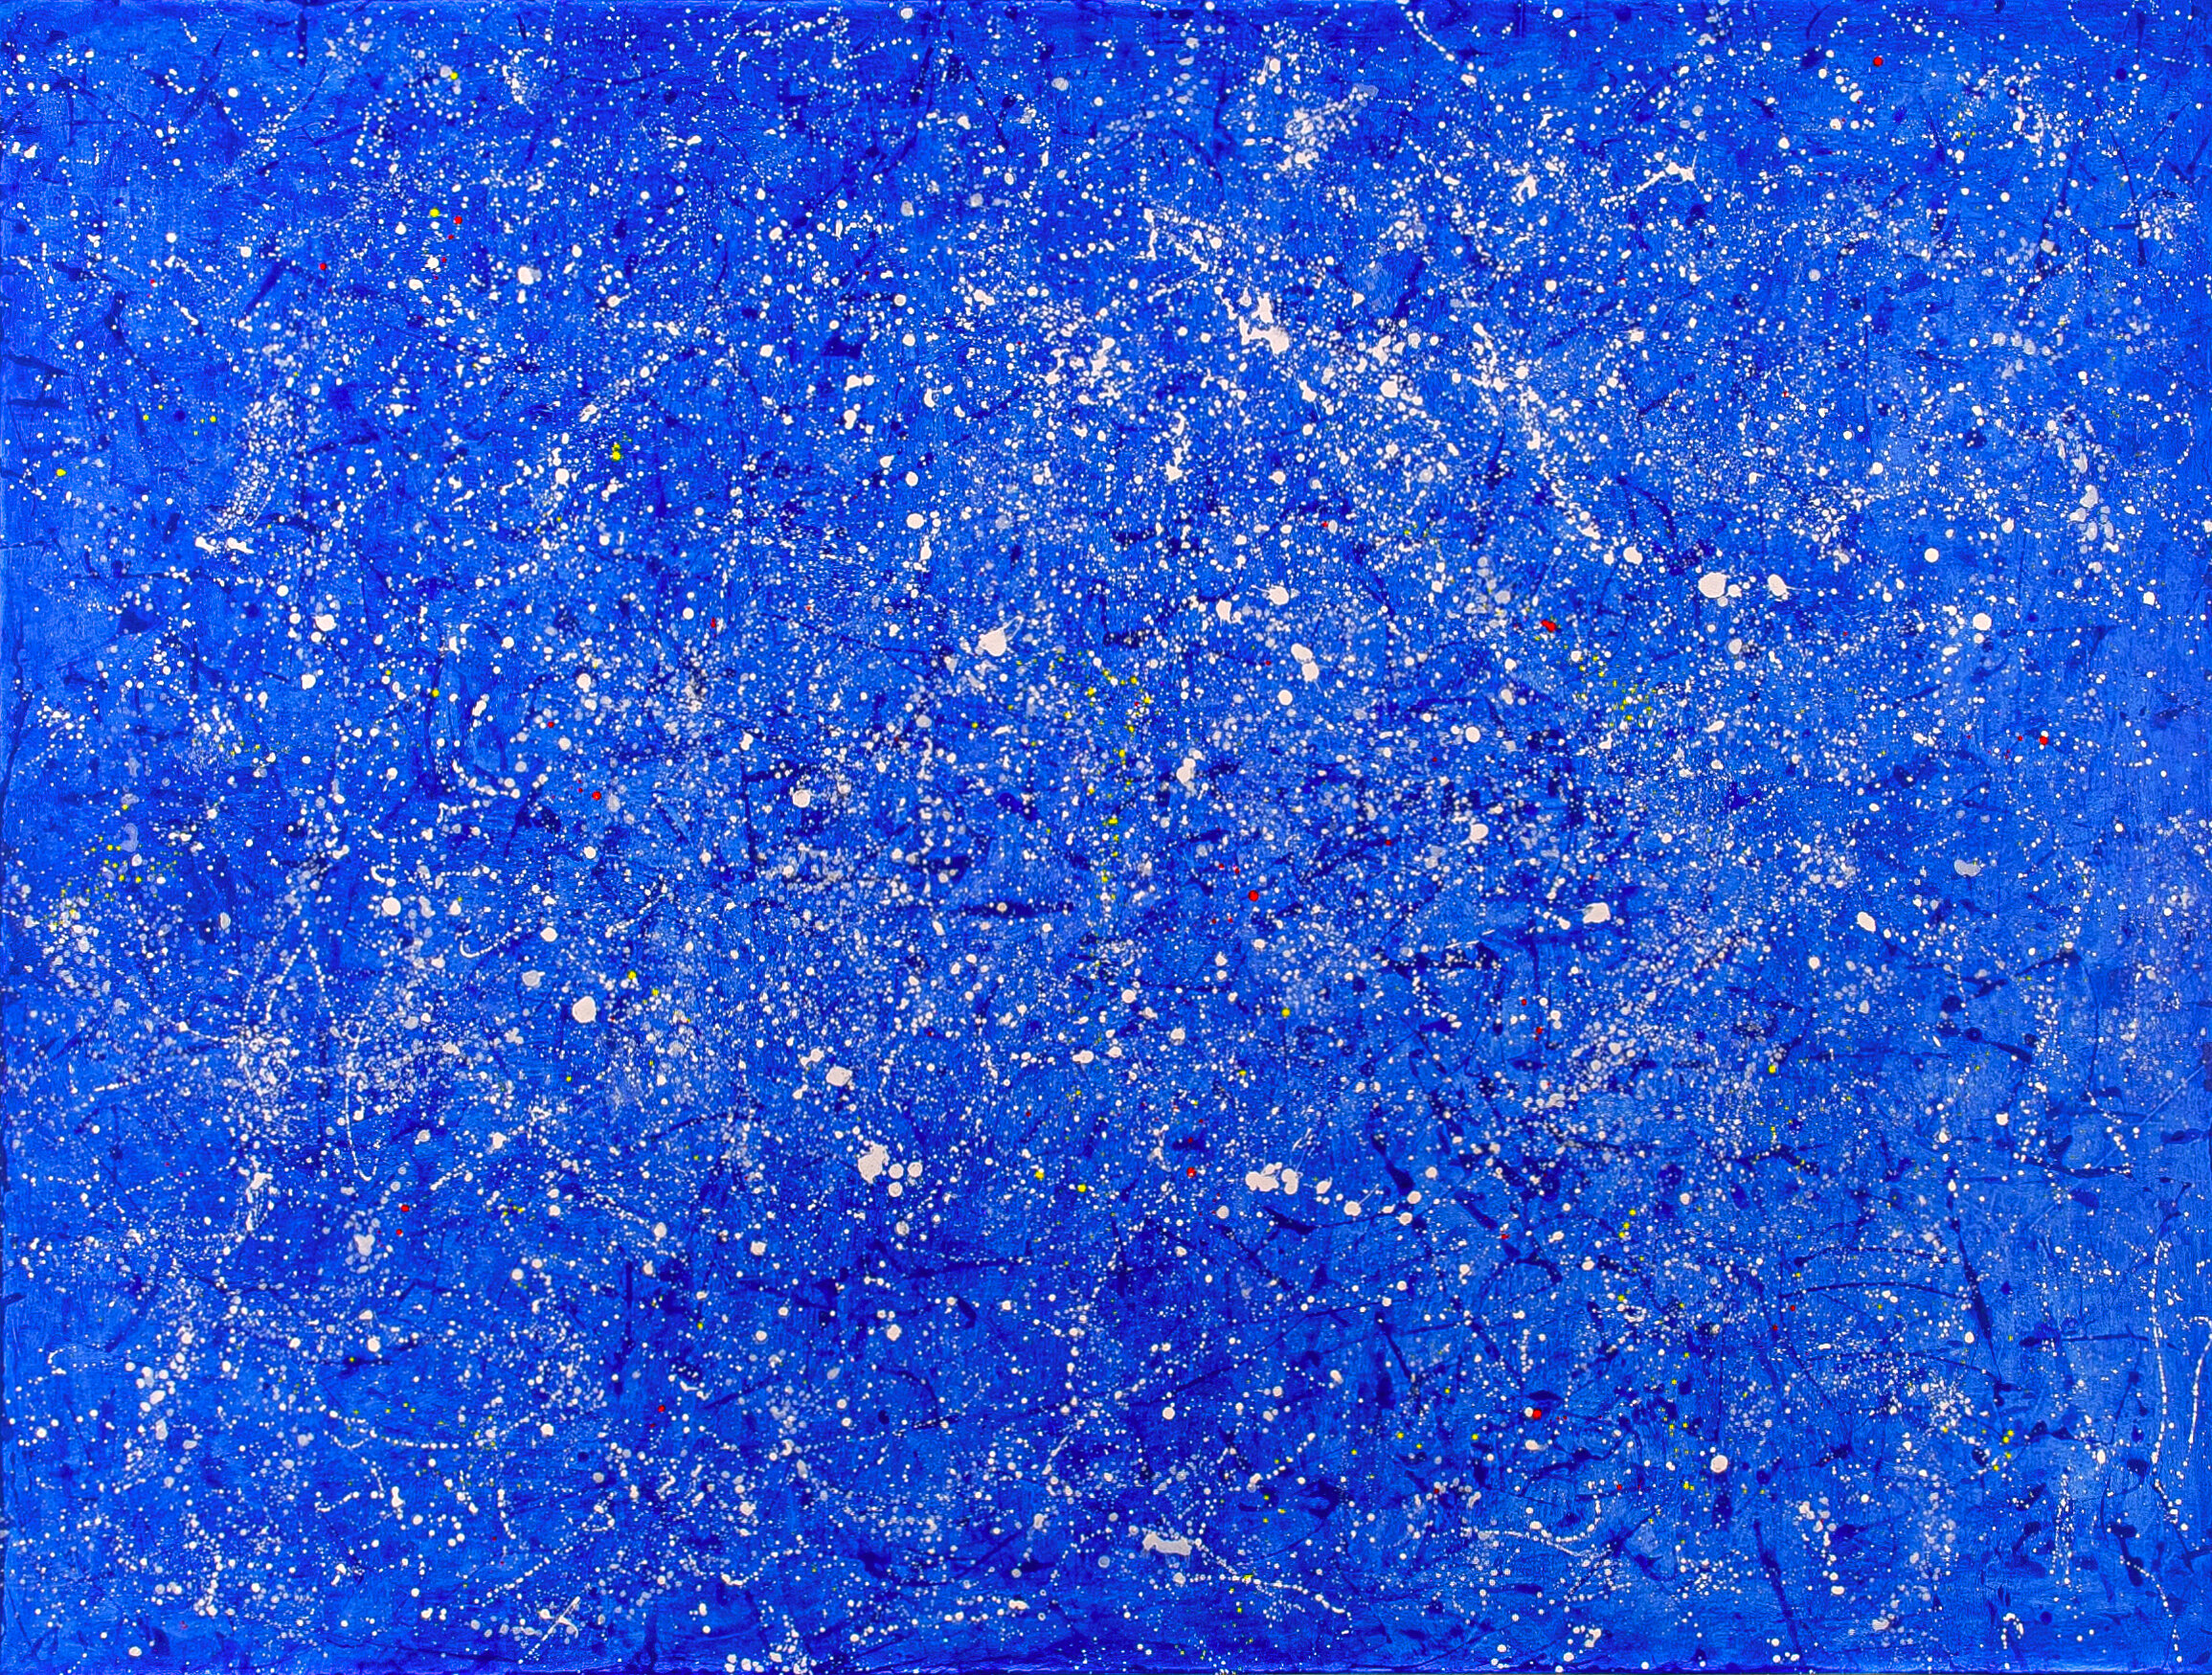   Galaxy VII , 2020, acrylic on canvas, 6 x 8 feet 